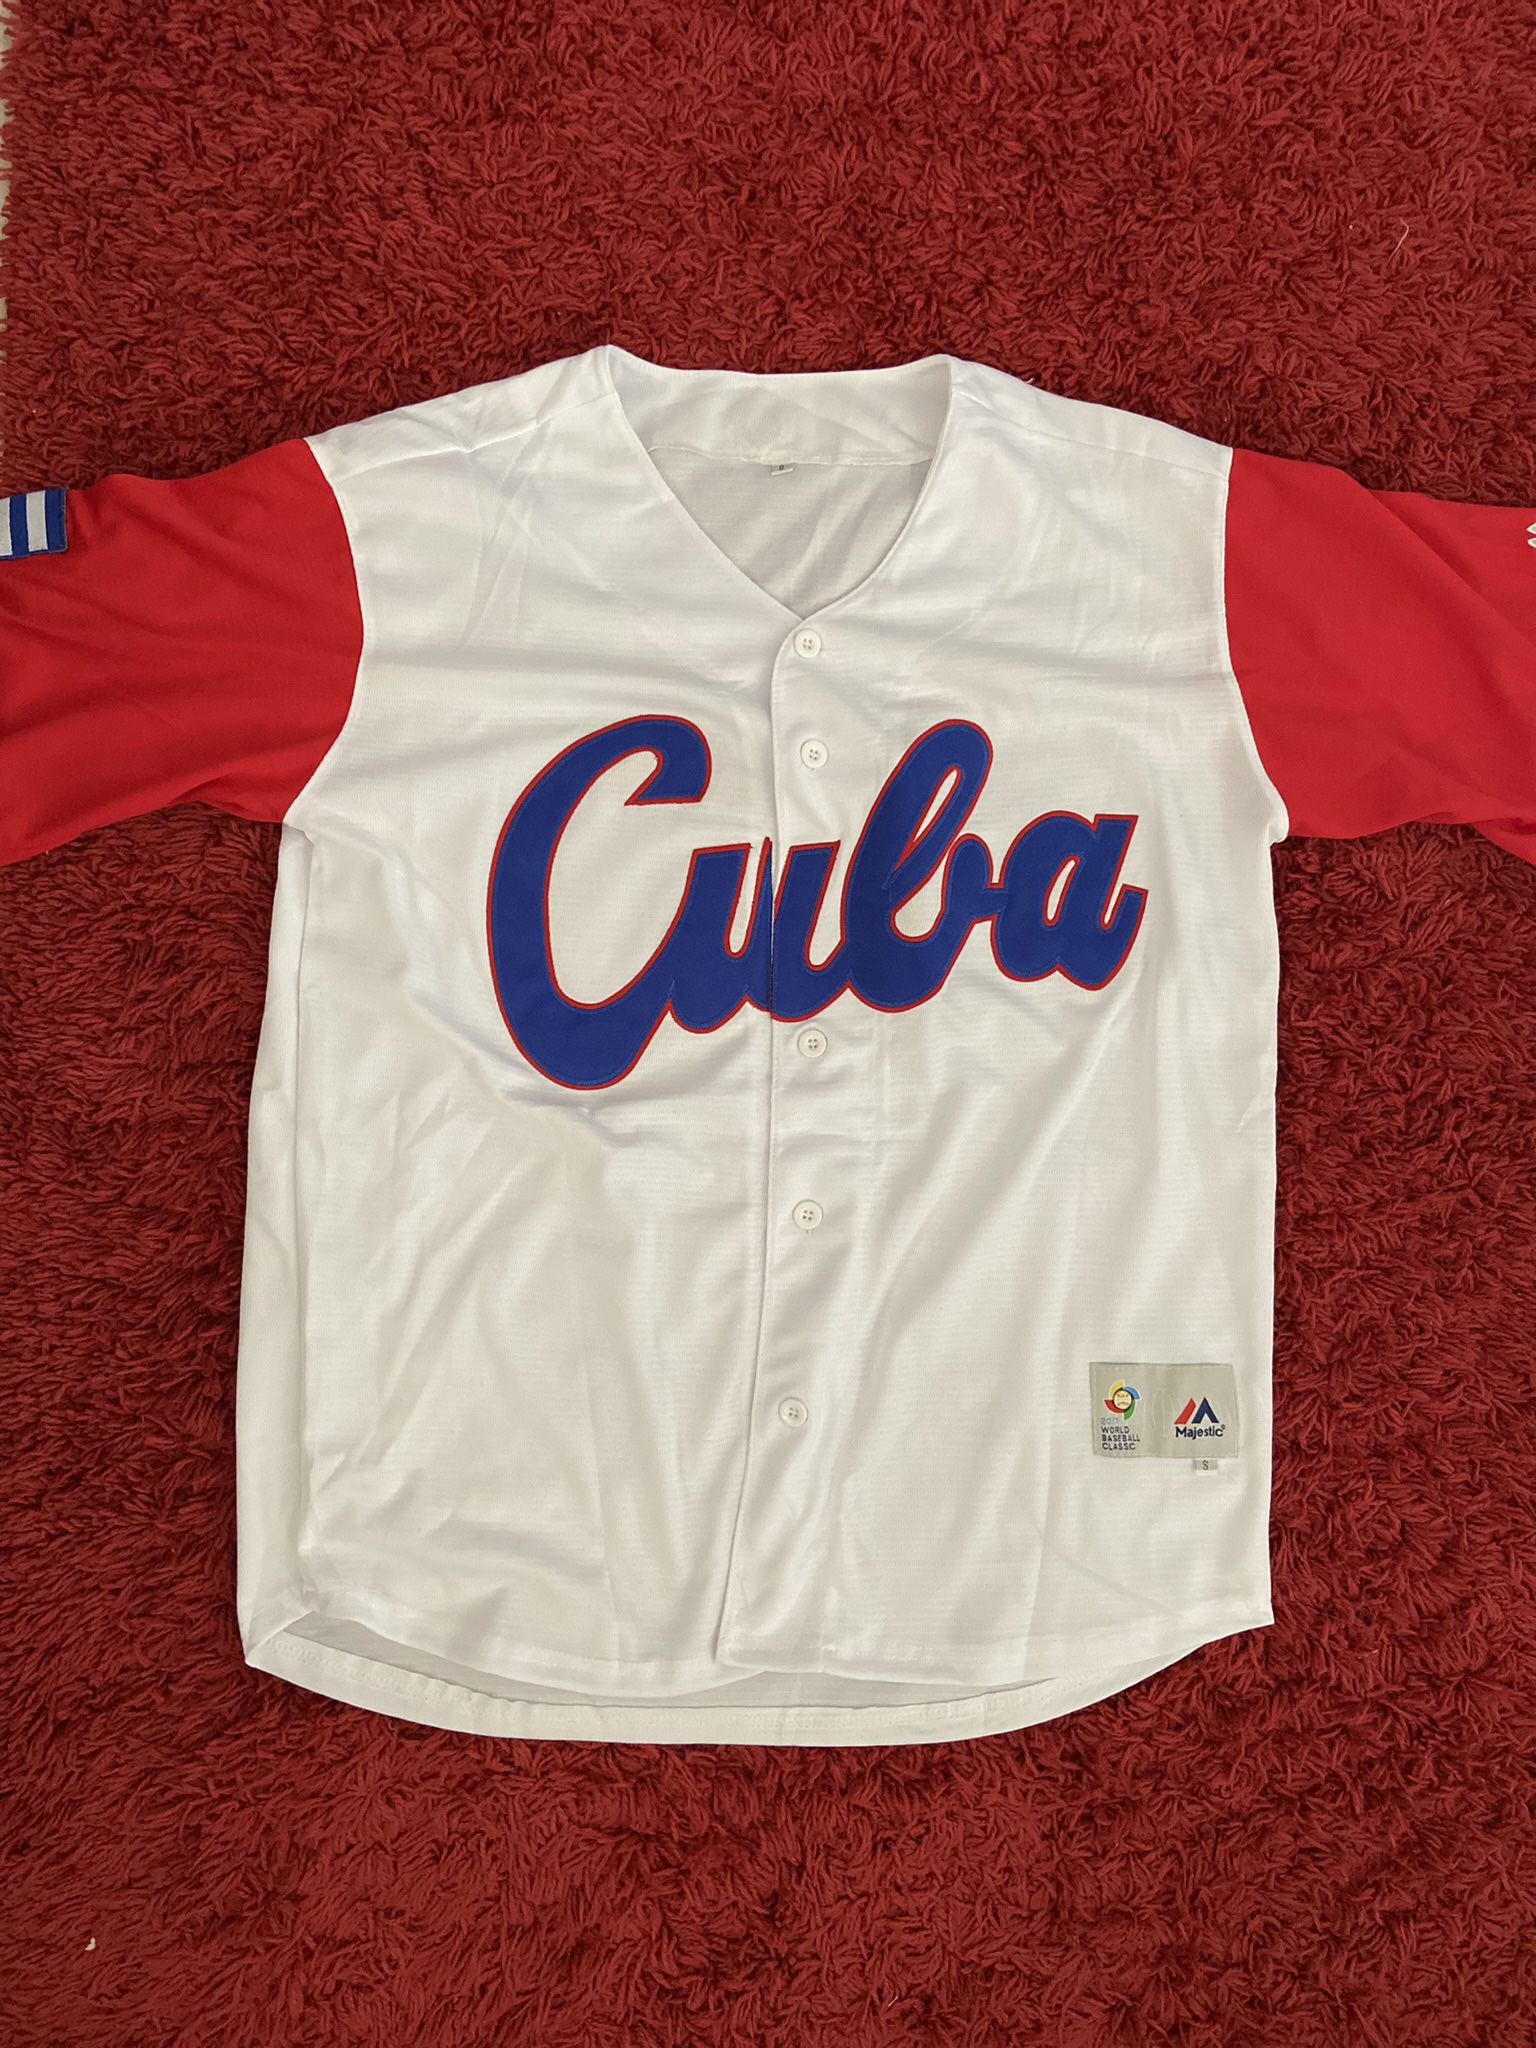 CUBA Baseball Jersey ALL SIZES! for Sale in Hialeah, FL - OfferUp